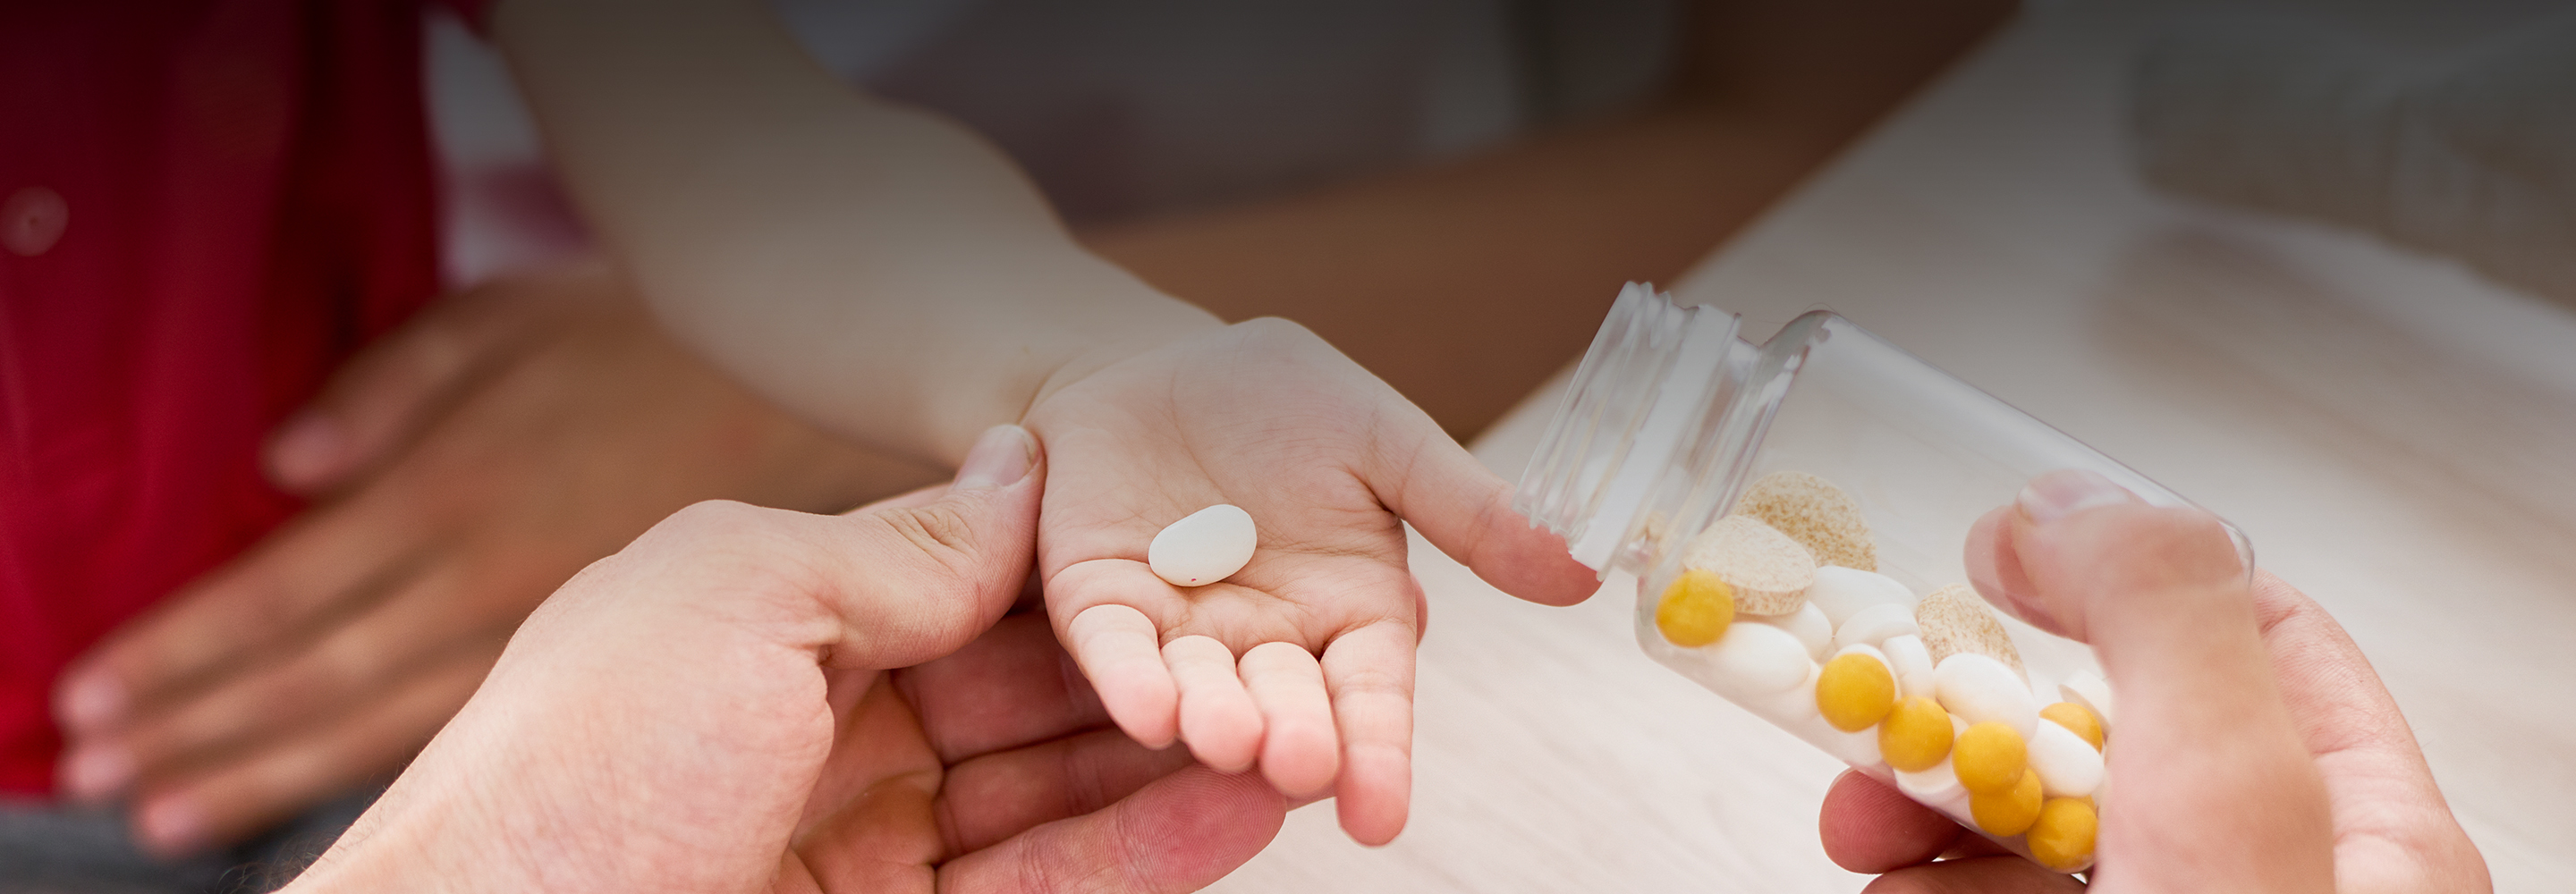 Глицин и АЦЦ: бесполезные и опасные препараты, которые часто выписывают детям